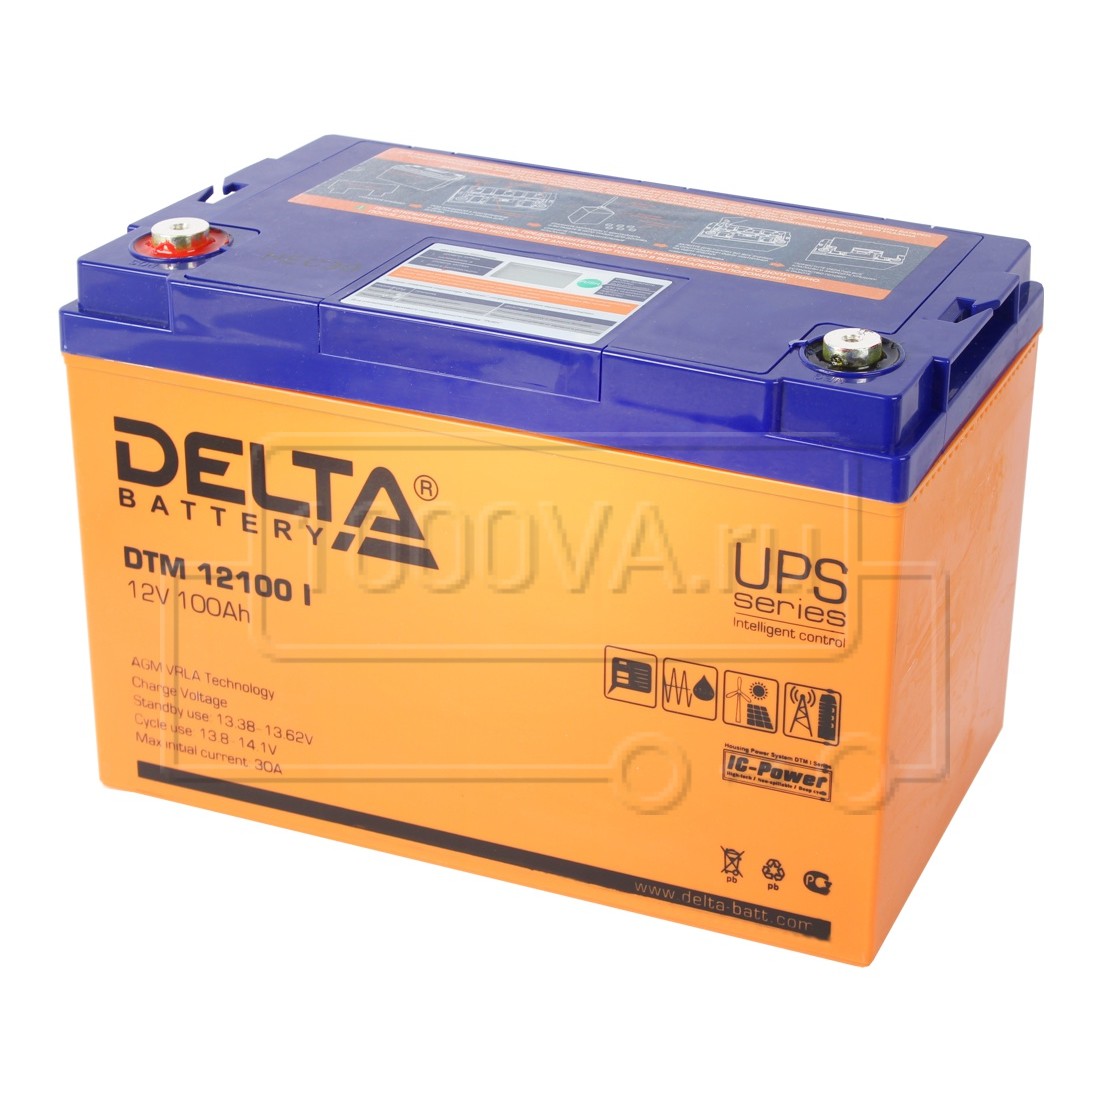 Купить аккумулятор Delta DTM 12100 I по выгодной цене - www.1000va